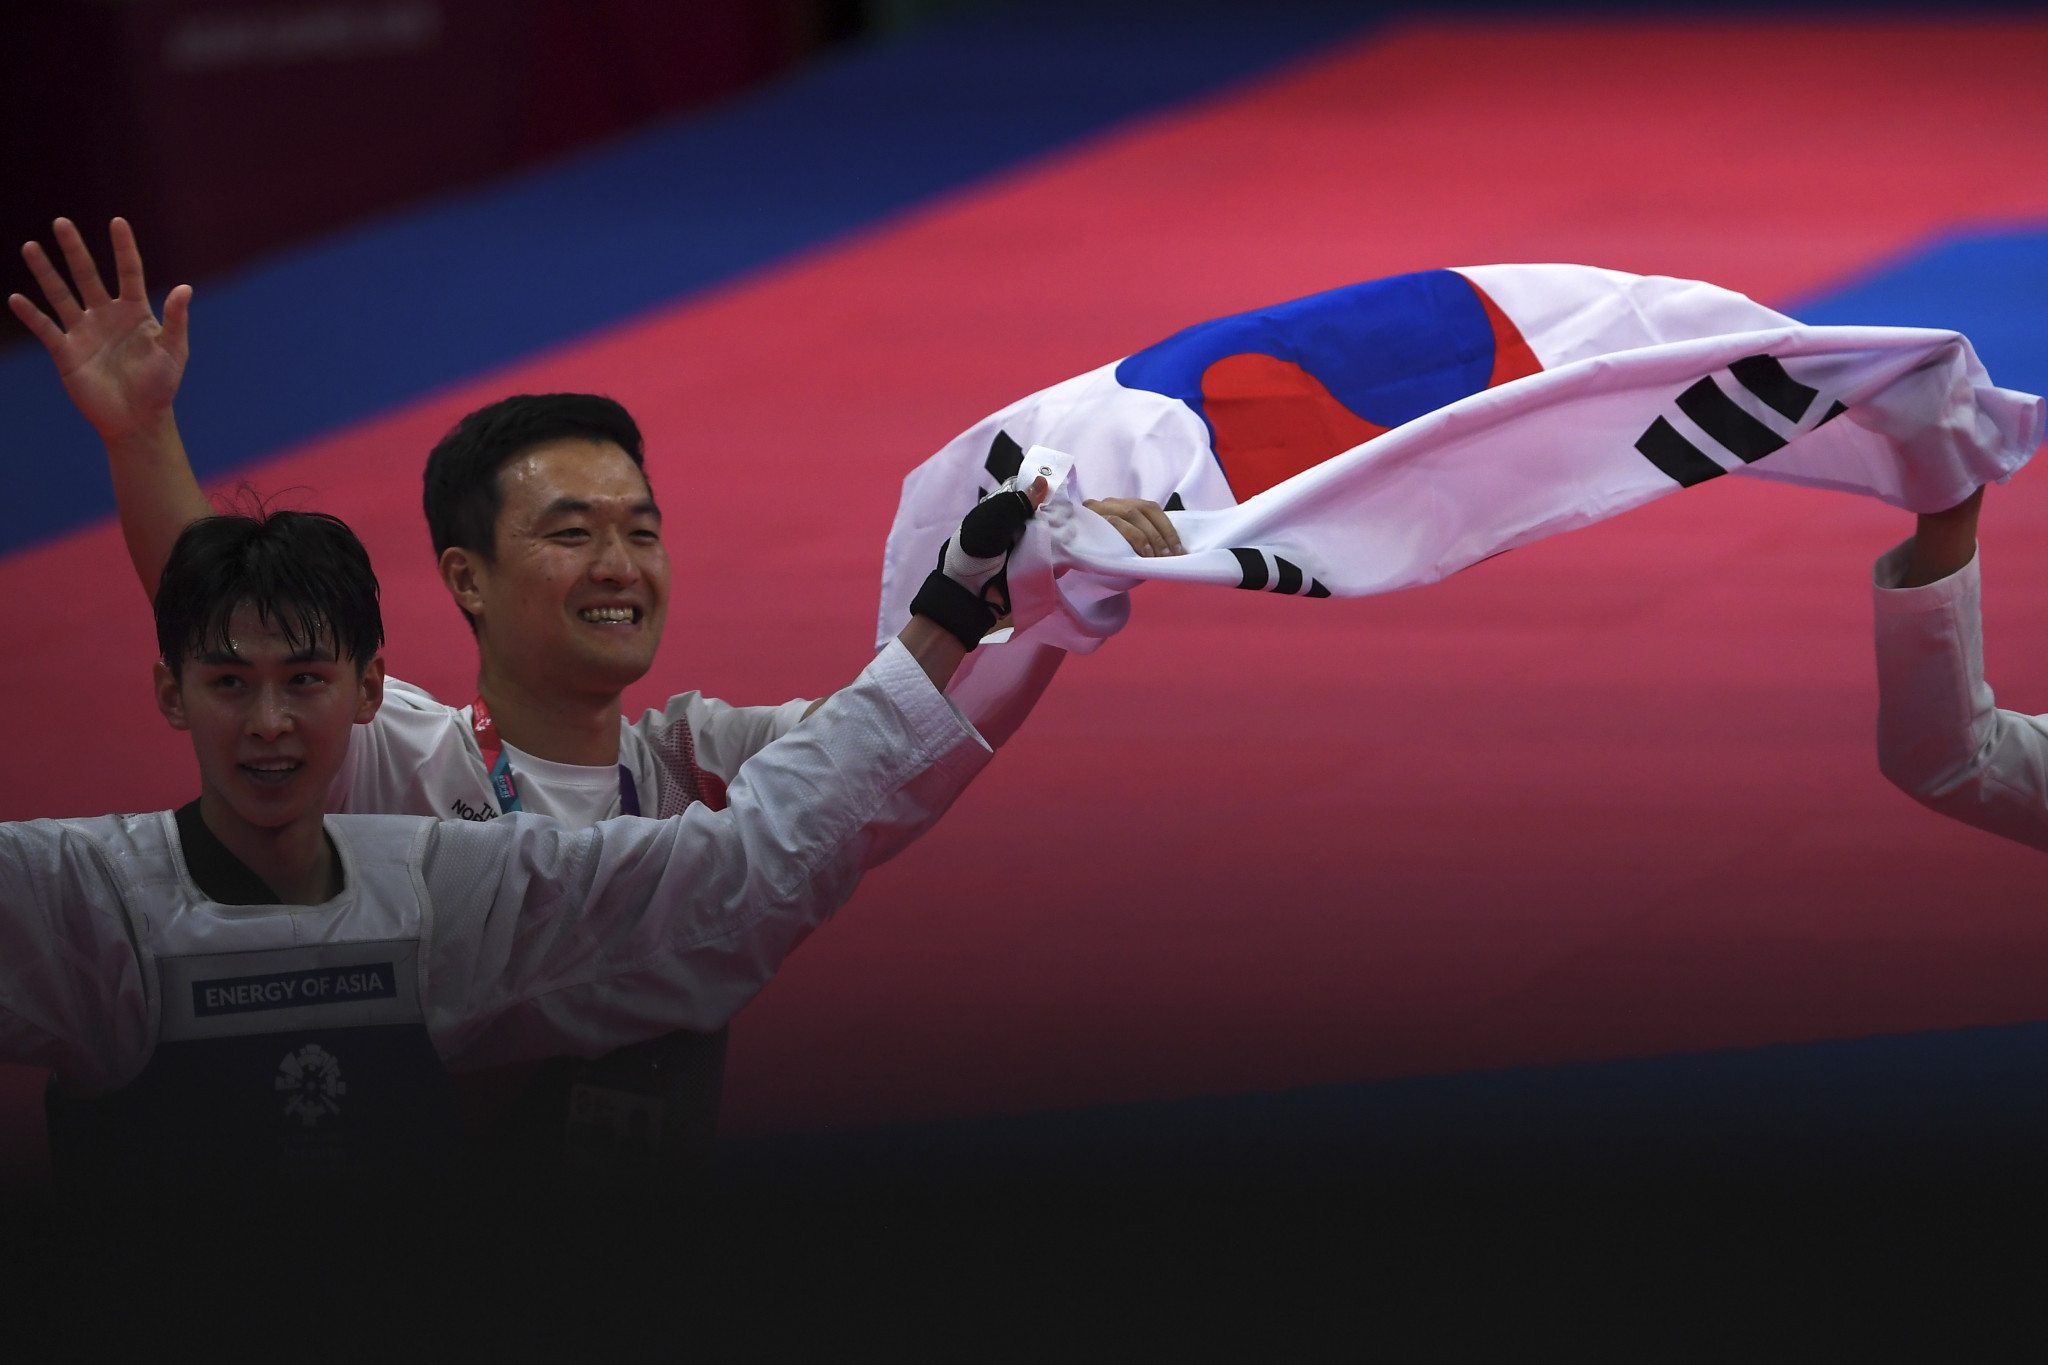 World champion Kim claims historic gold medal as taekwondo action continues at 2018 Asian Games